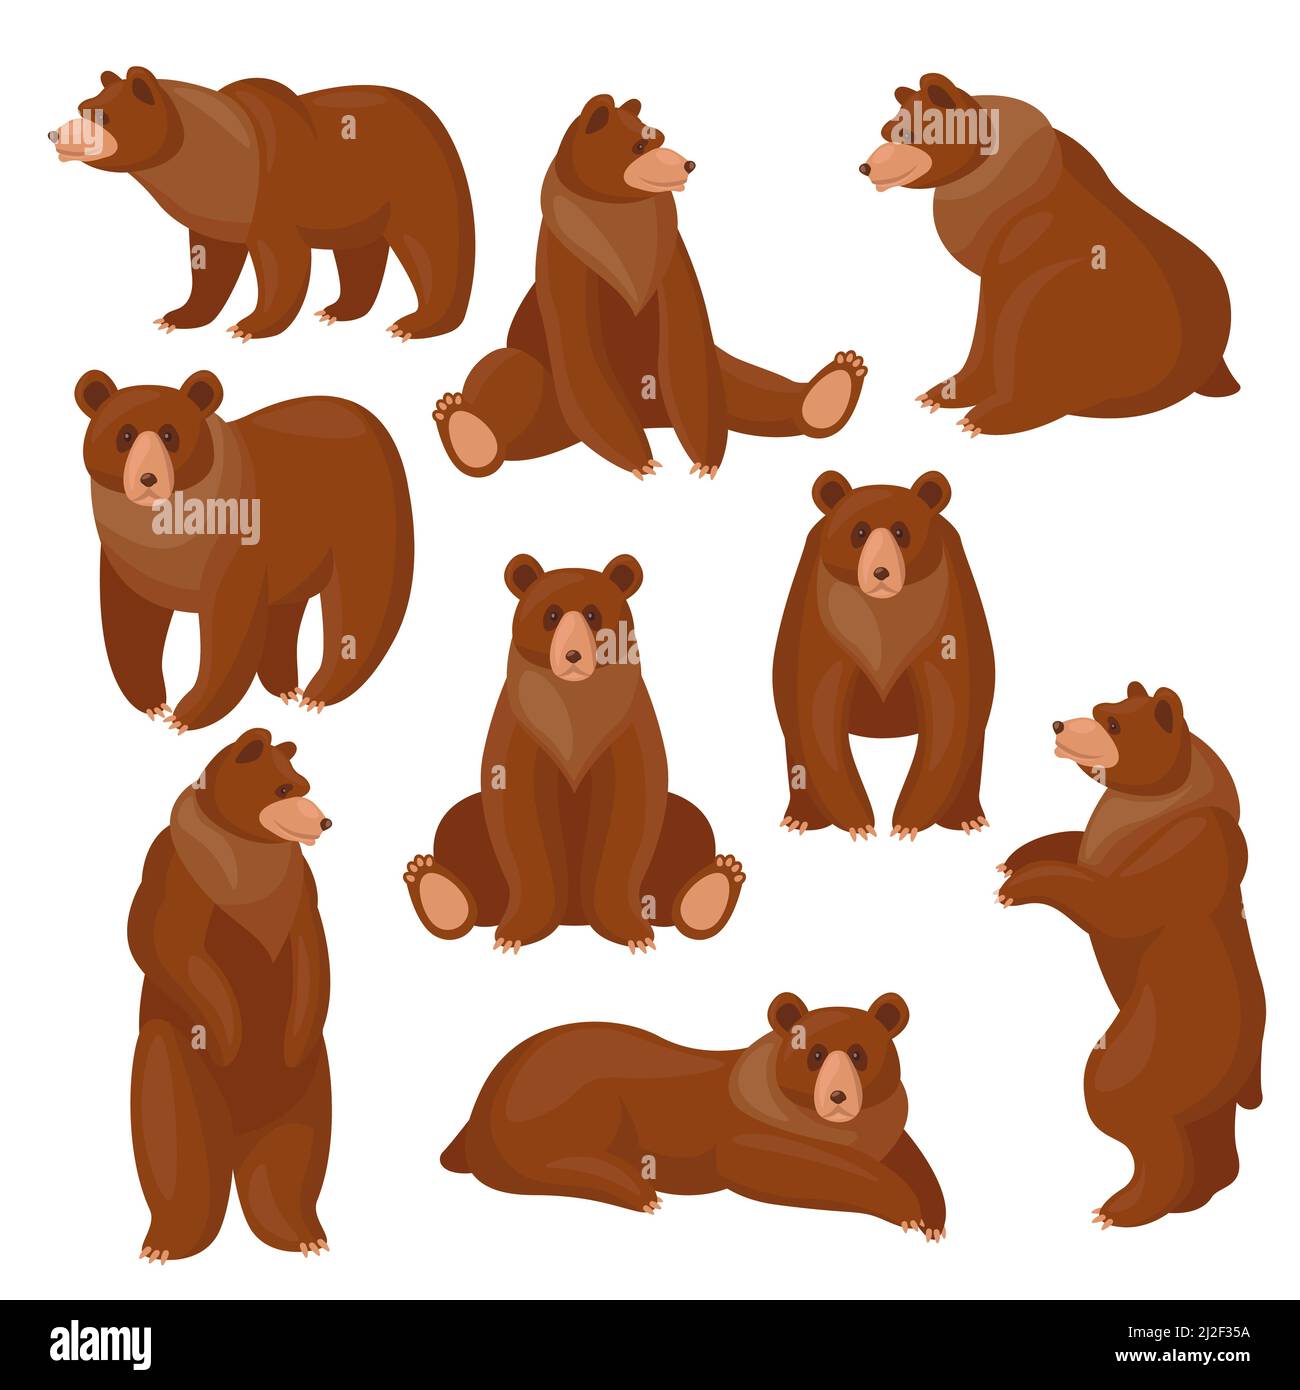 Braunbären-Set. Verschiedene Ansichten und Posen von niedlichen Cartoon Grizzly sitzen, stehen, gehen isoliert auf weiß. Vektorgrafiken für Wildtiere, PR Stock Vektor